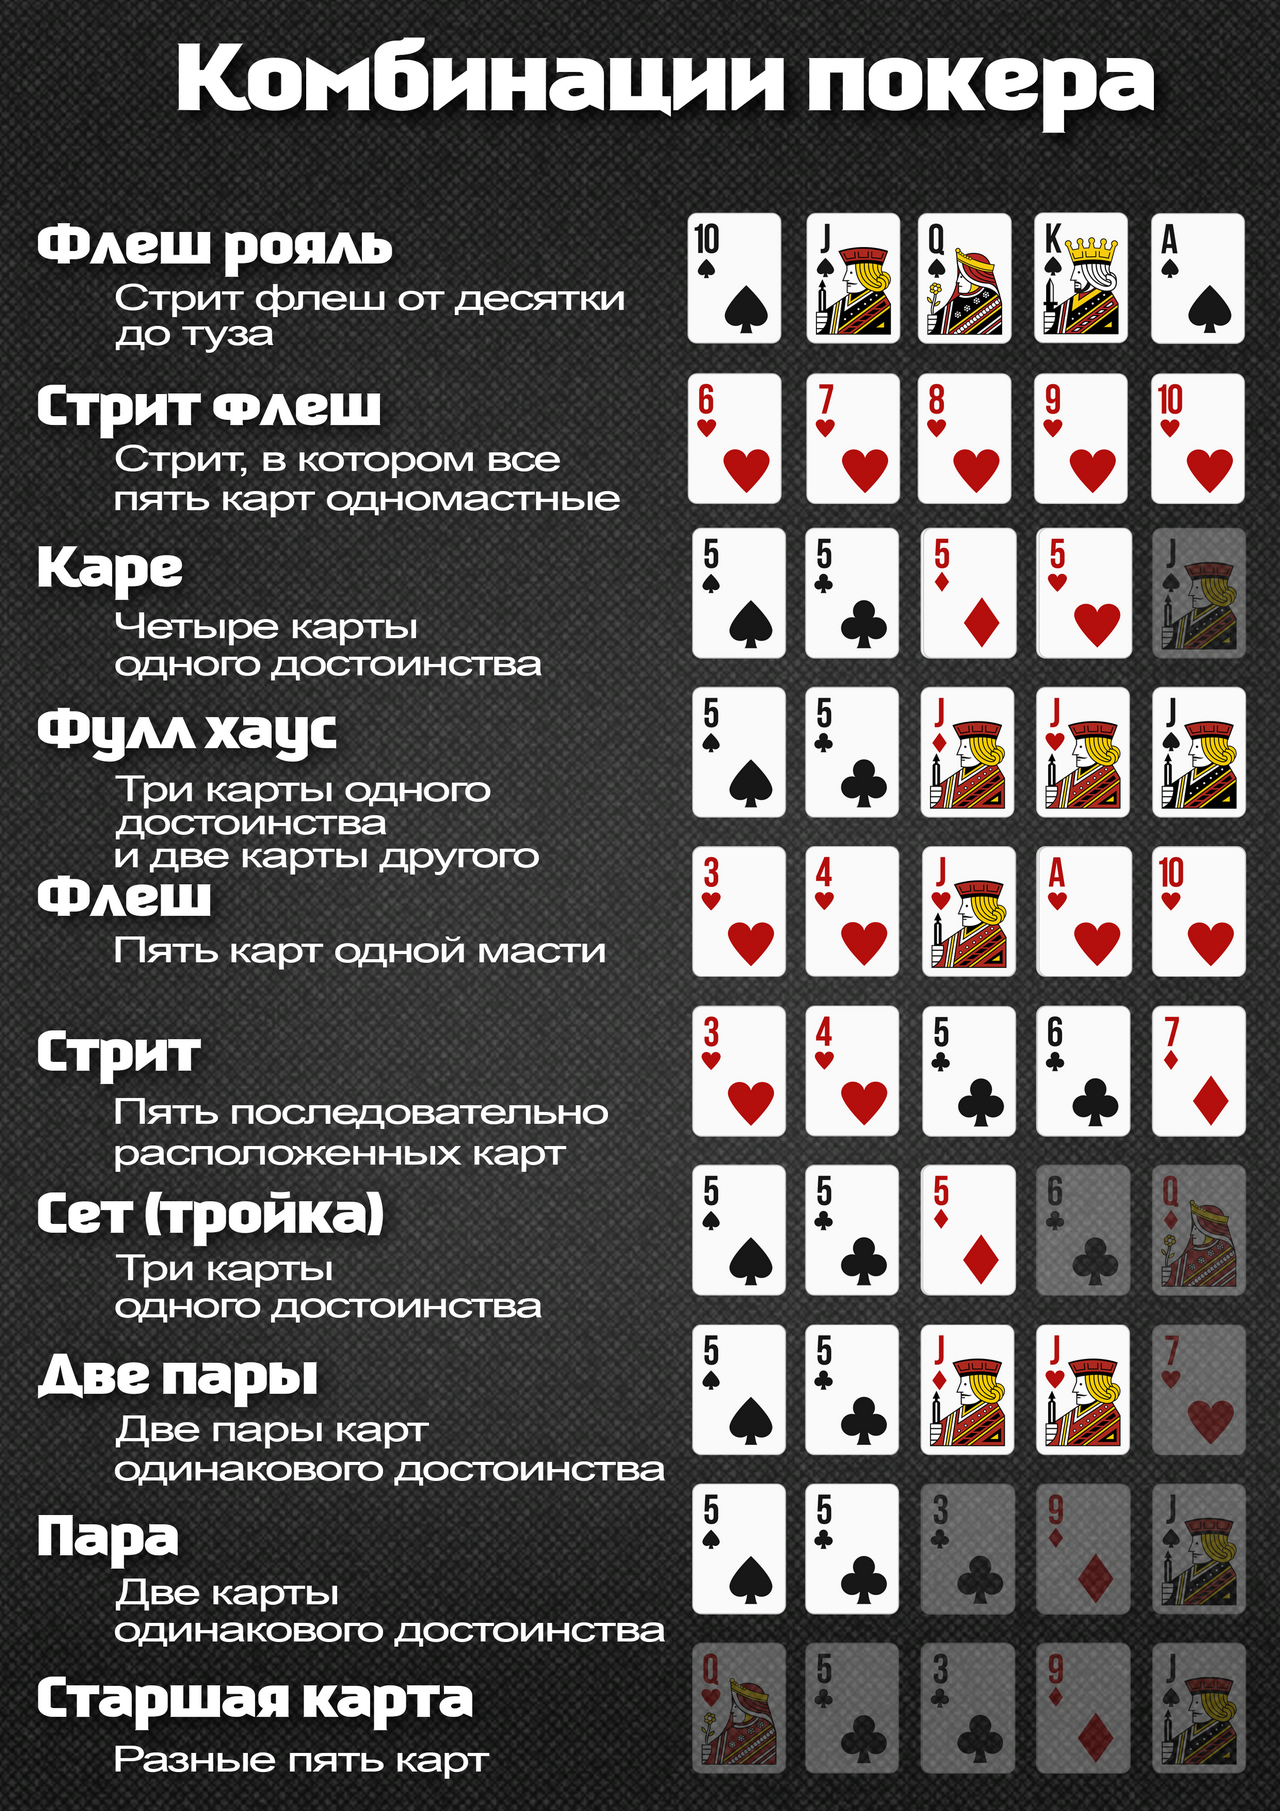 Покер 5 карт с обменом играть онлайн игровые автоматы для детей в москве